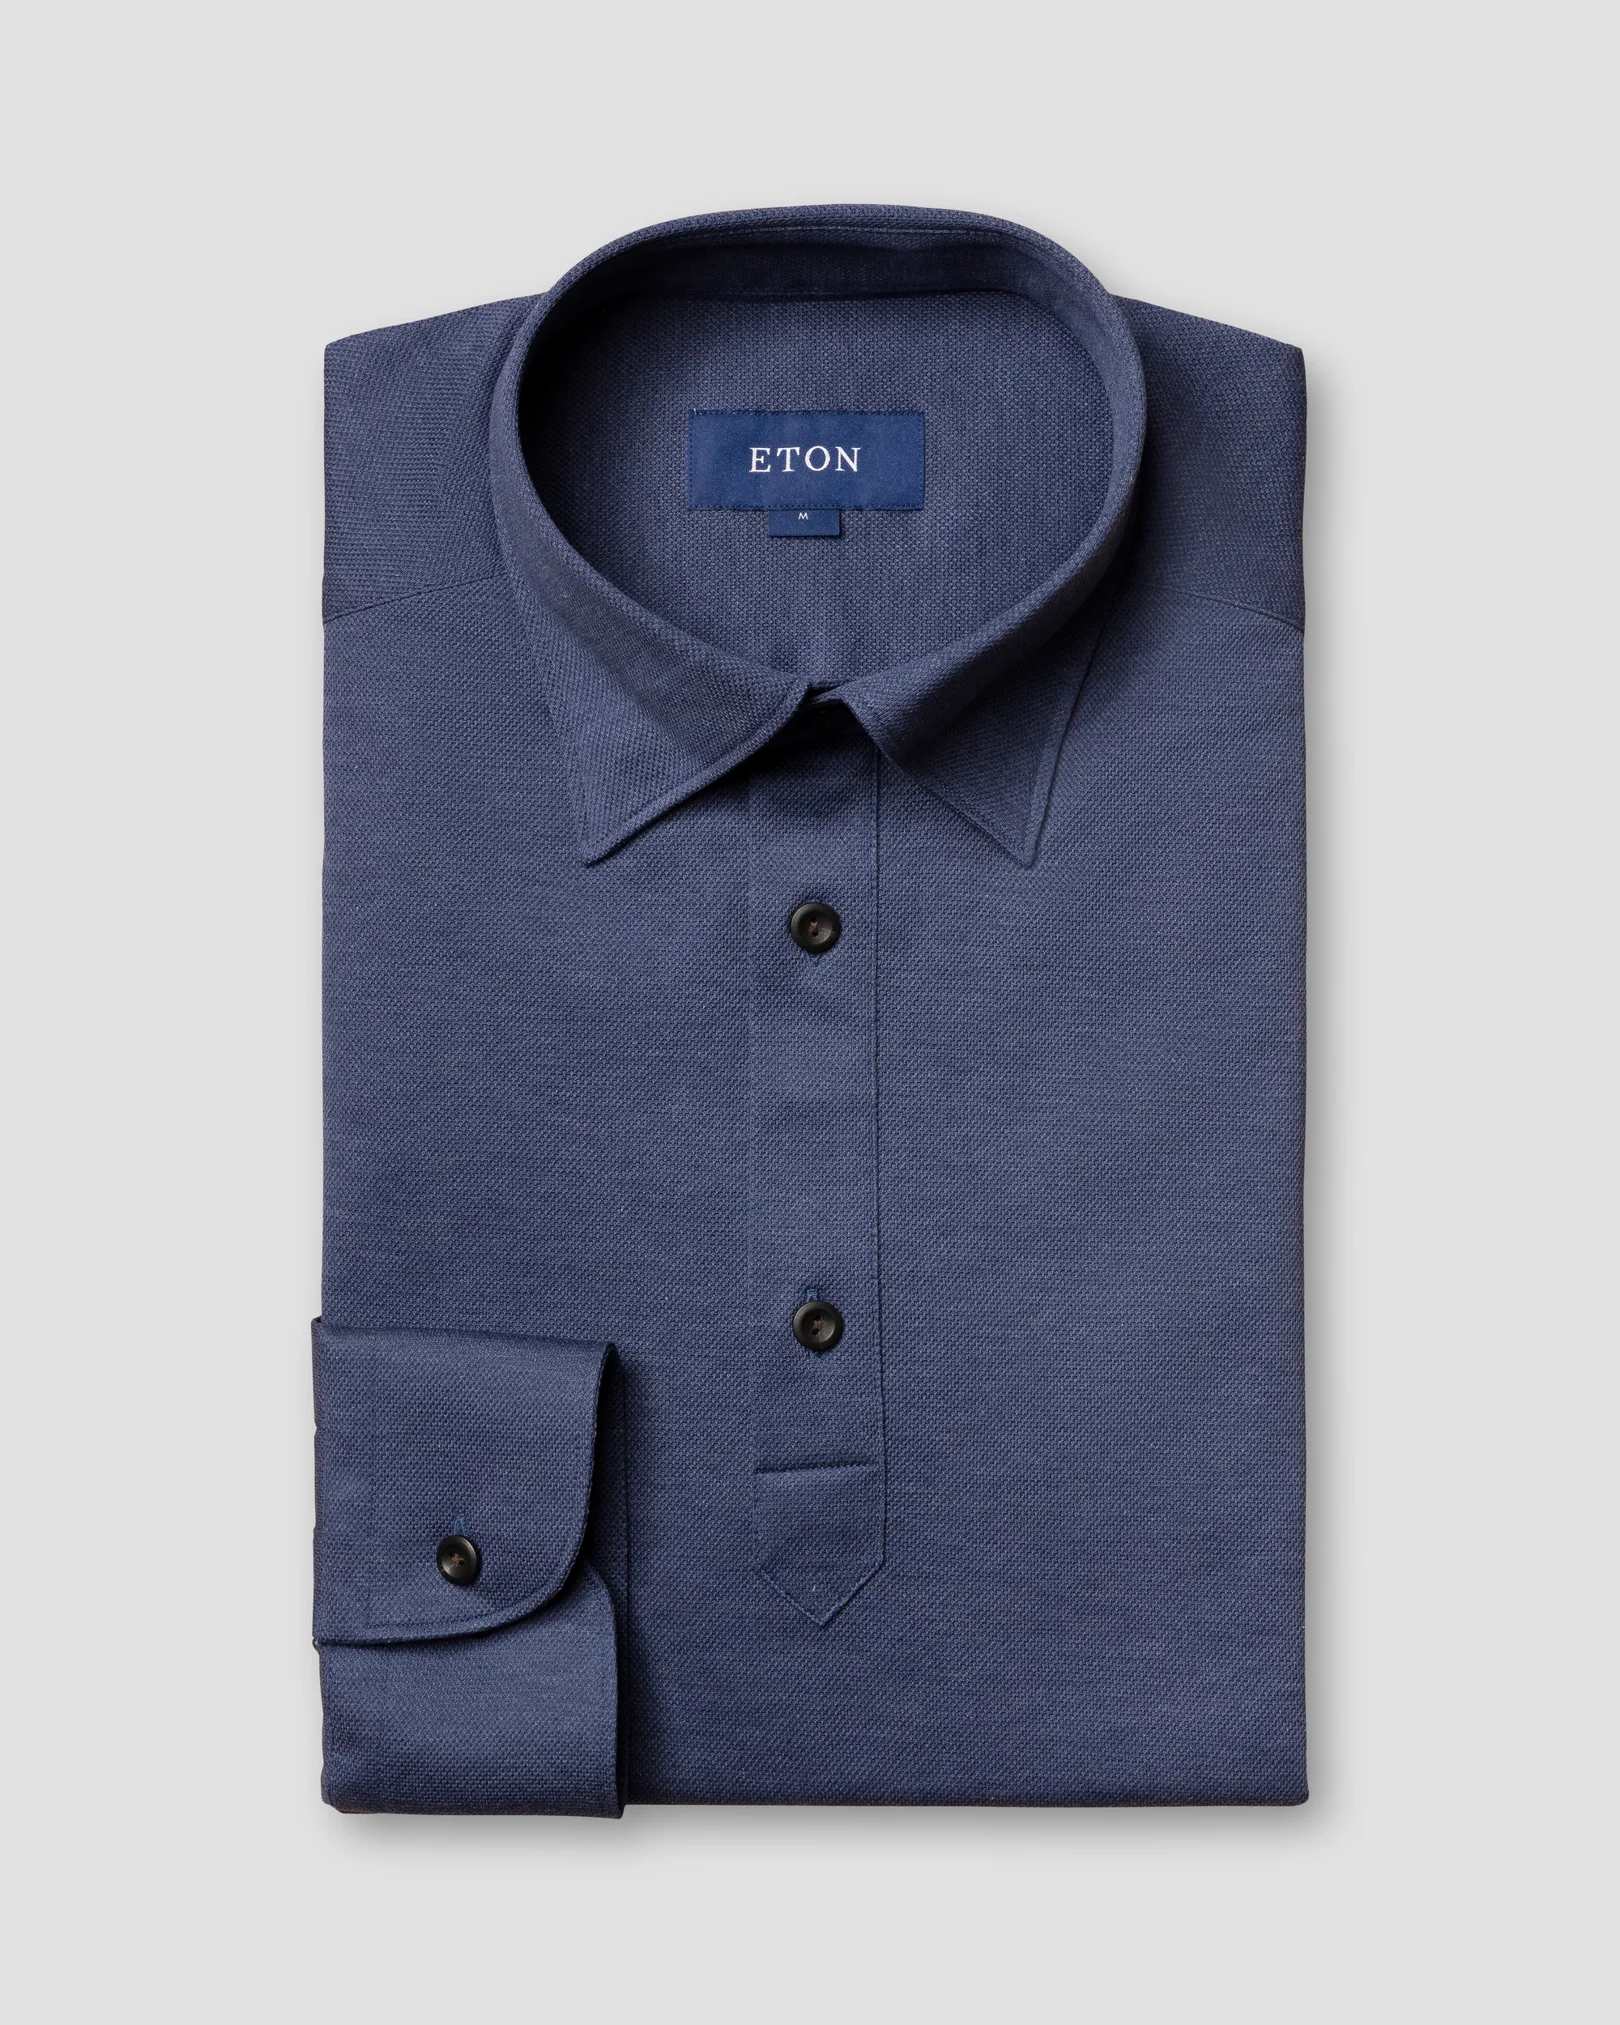 Eton - indigo blue polo shirt long sleeved